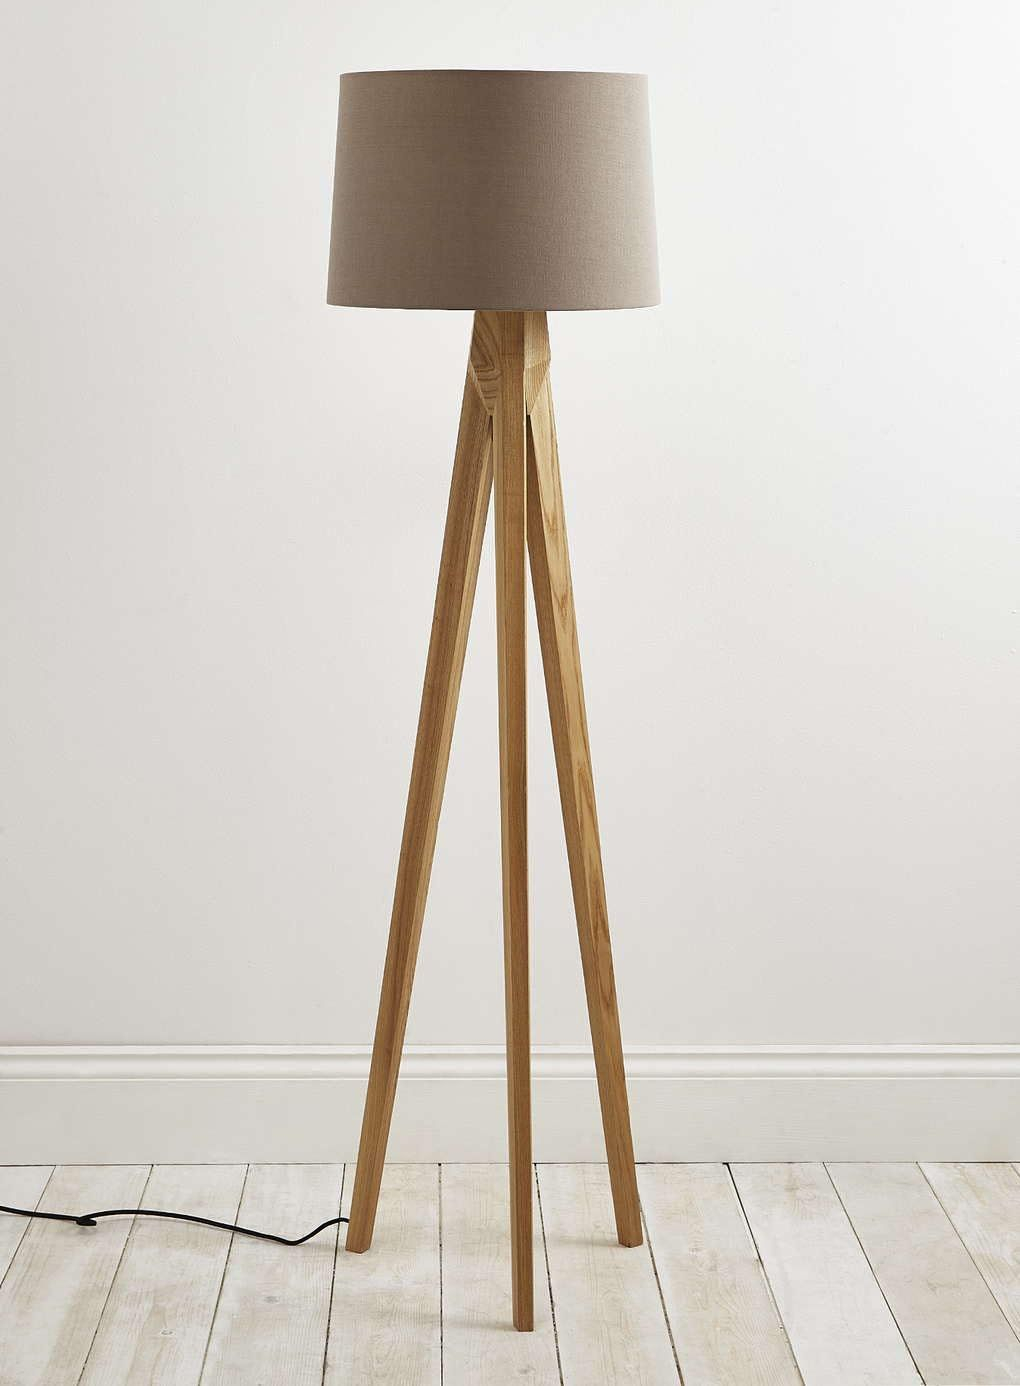 Tripod Floor Lamp Wooden Legs In 2019 Wooden Floor Lamps throughout measurements 1020 X 1386